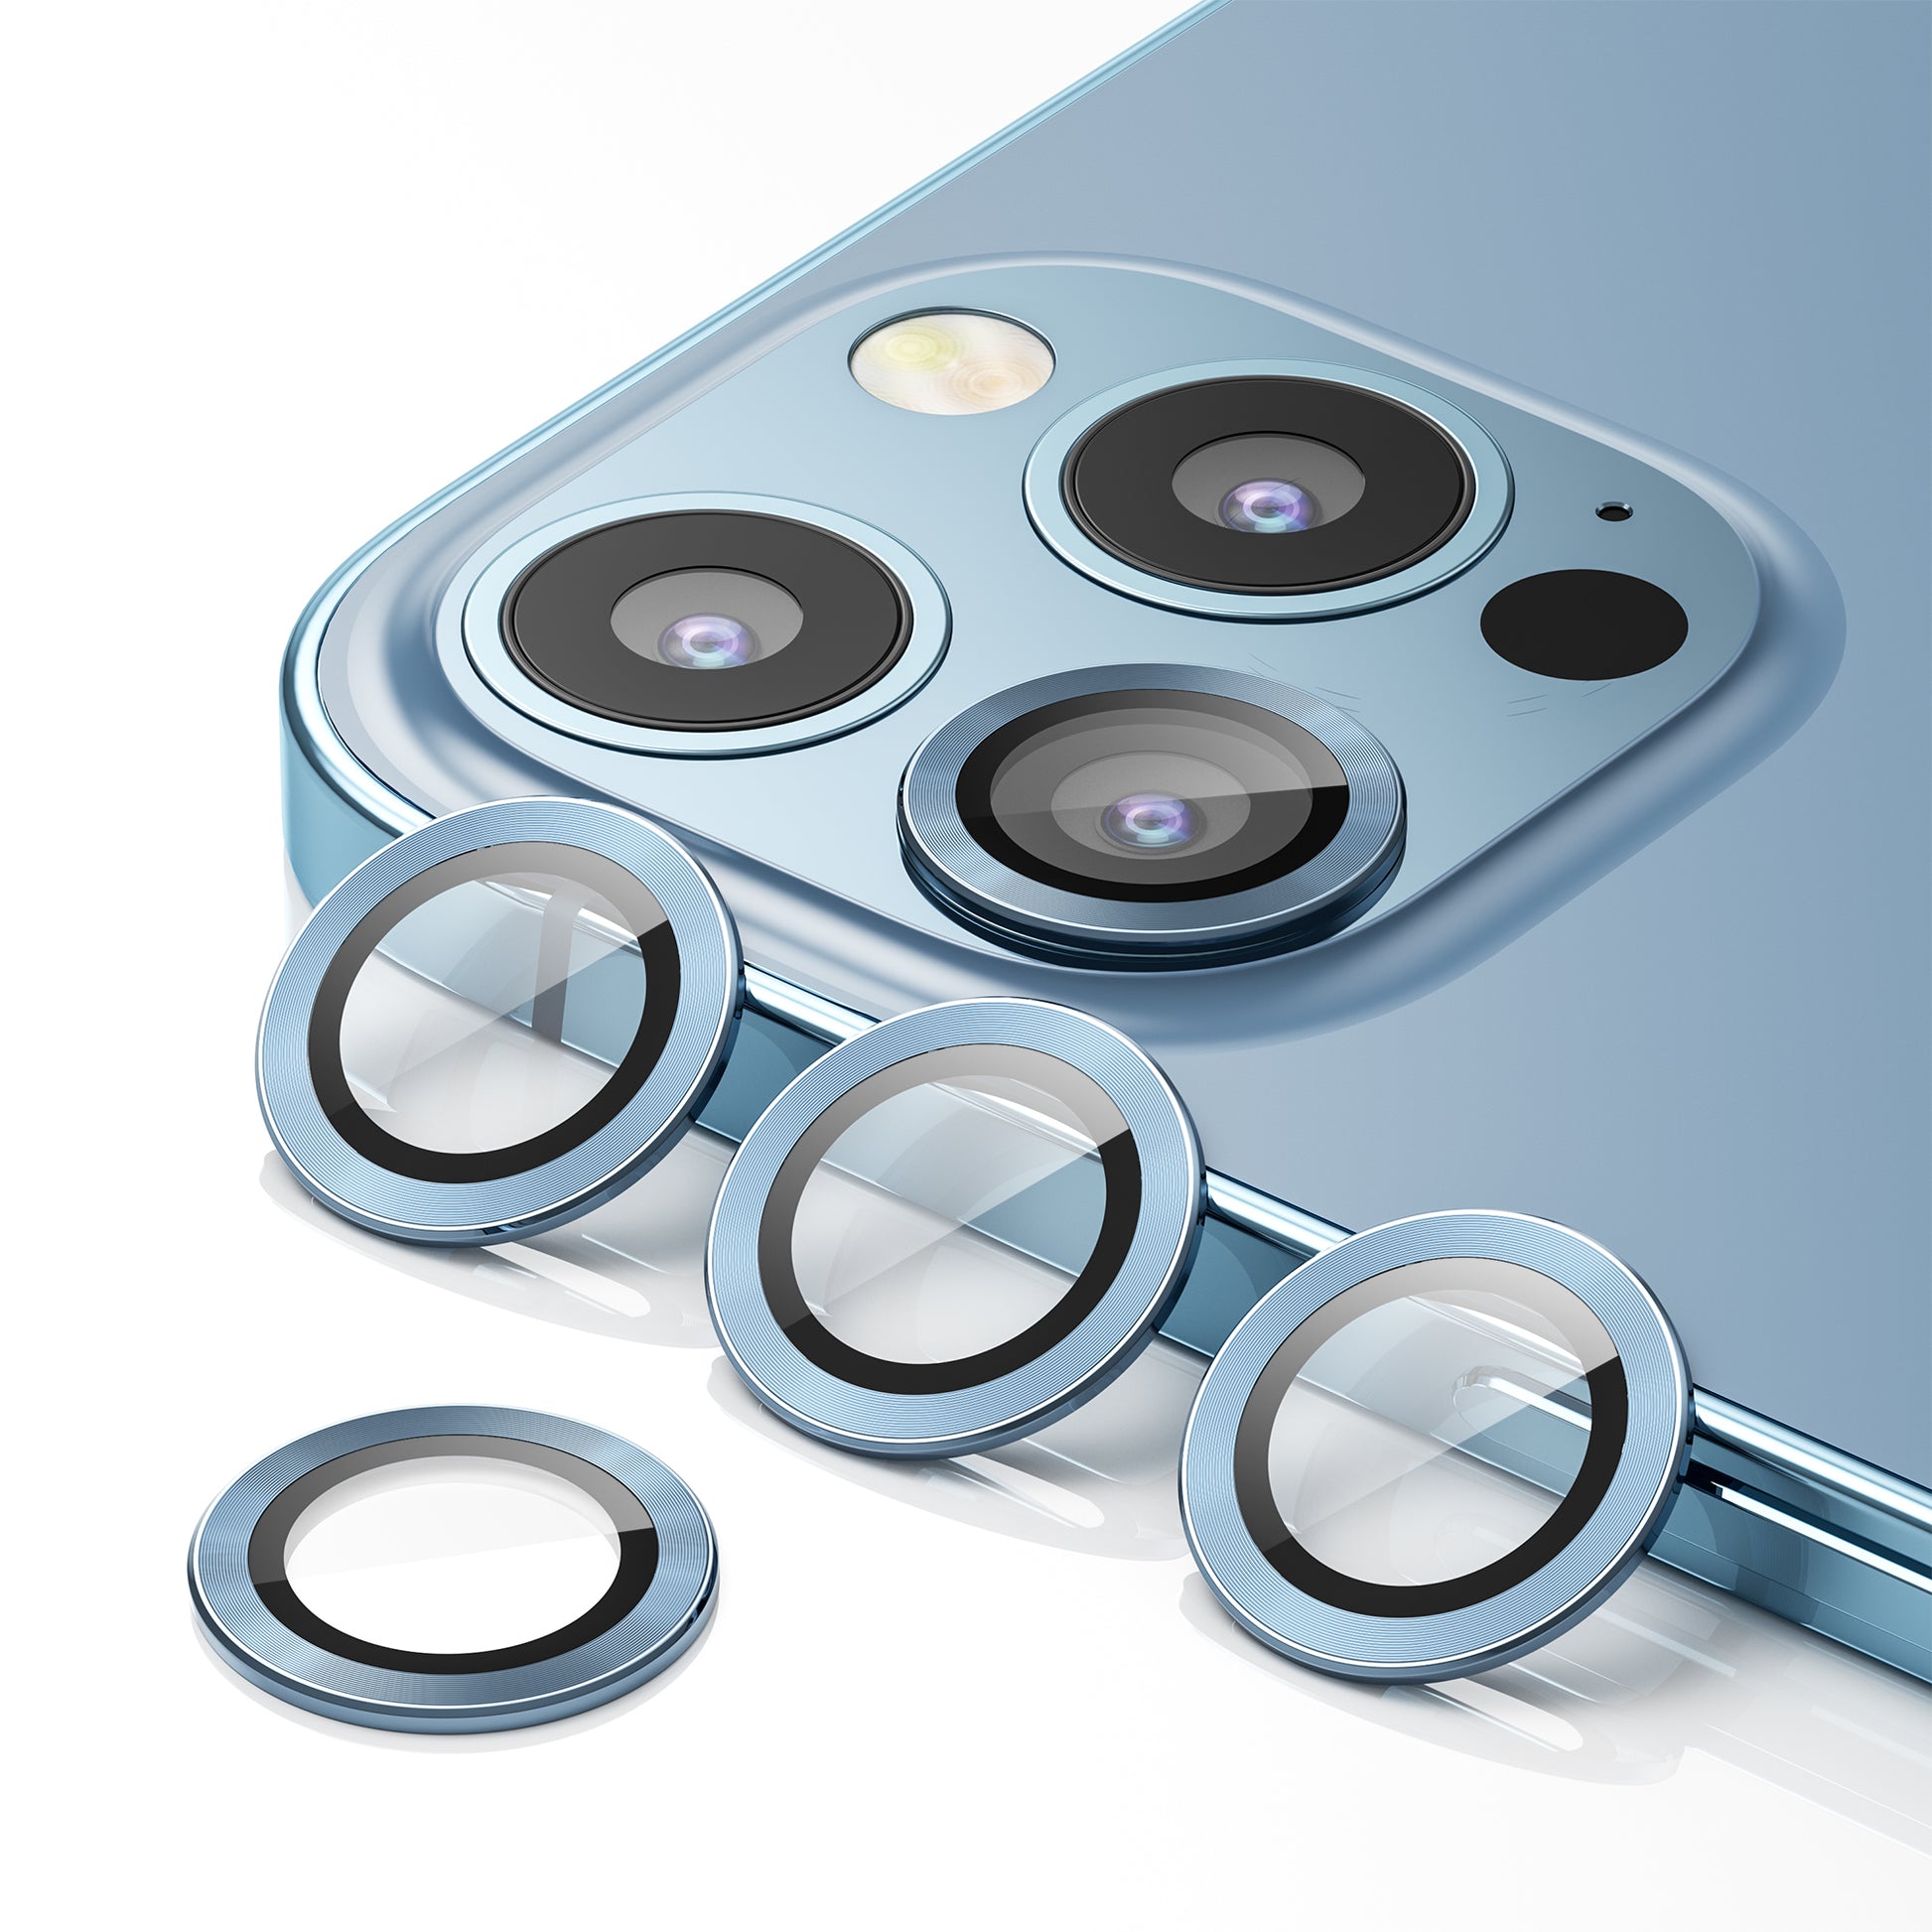  WSKEN [3+1] Protector de lente de cámara para iPhone